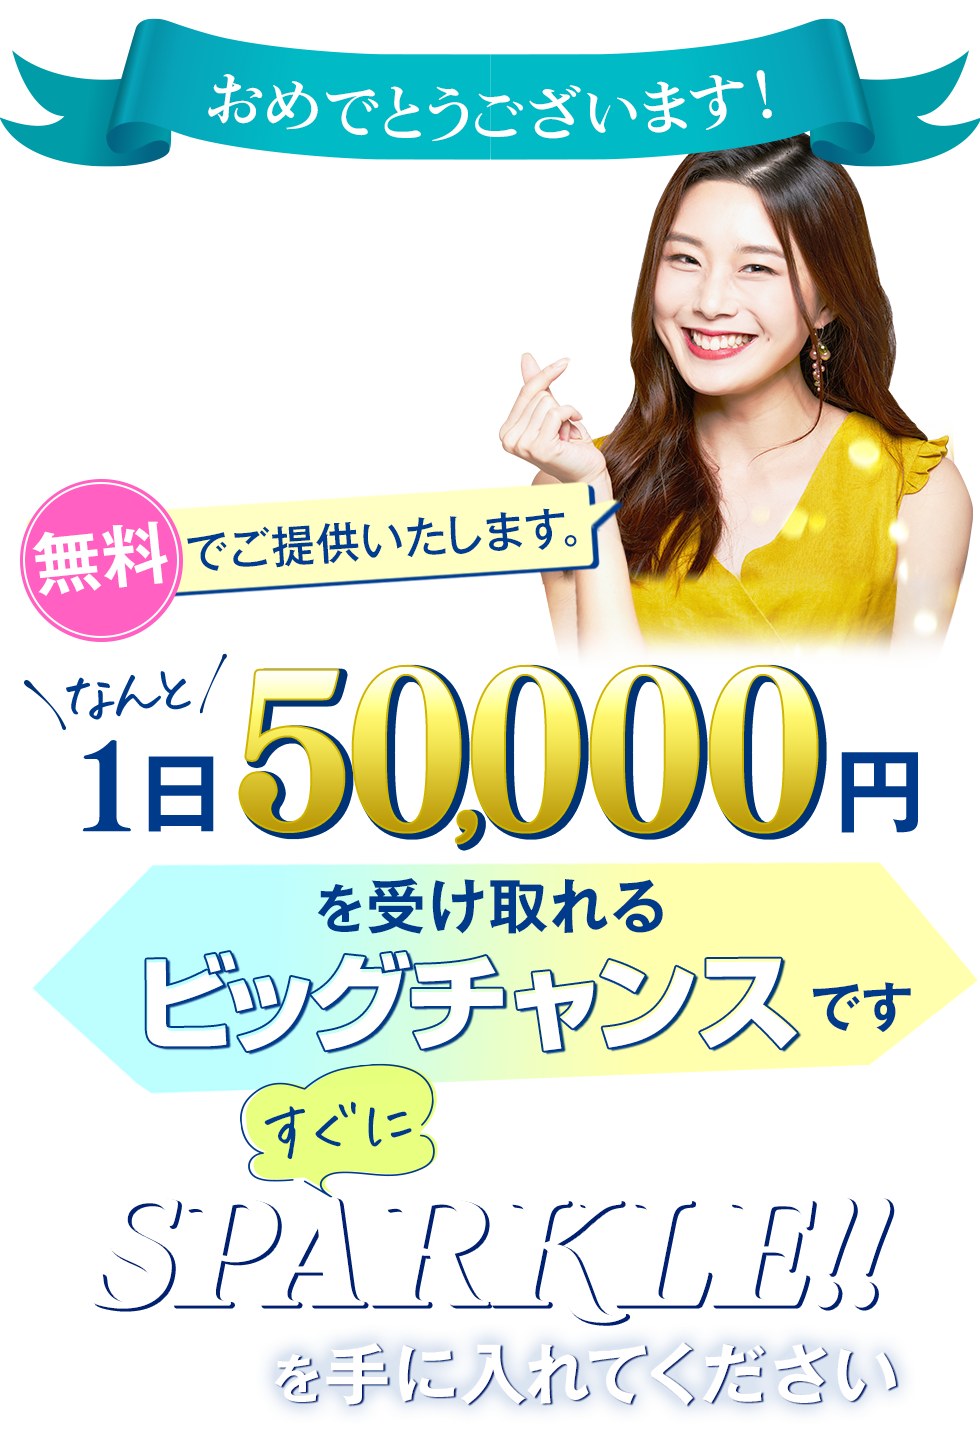 1日なんと50000円を受け取るビッグチャンスです。すぐに「Sparkle!!」を手に入れてください。